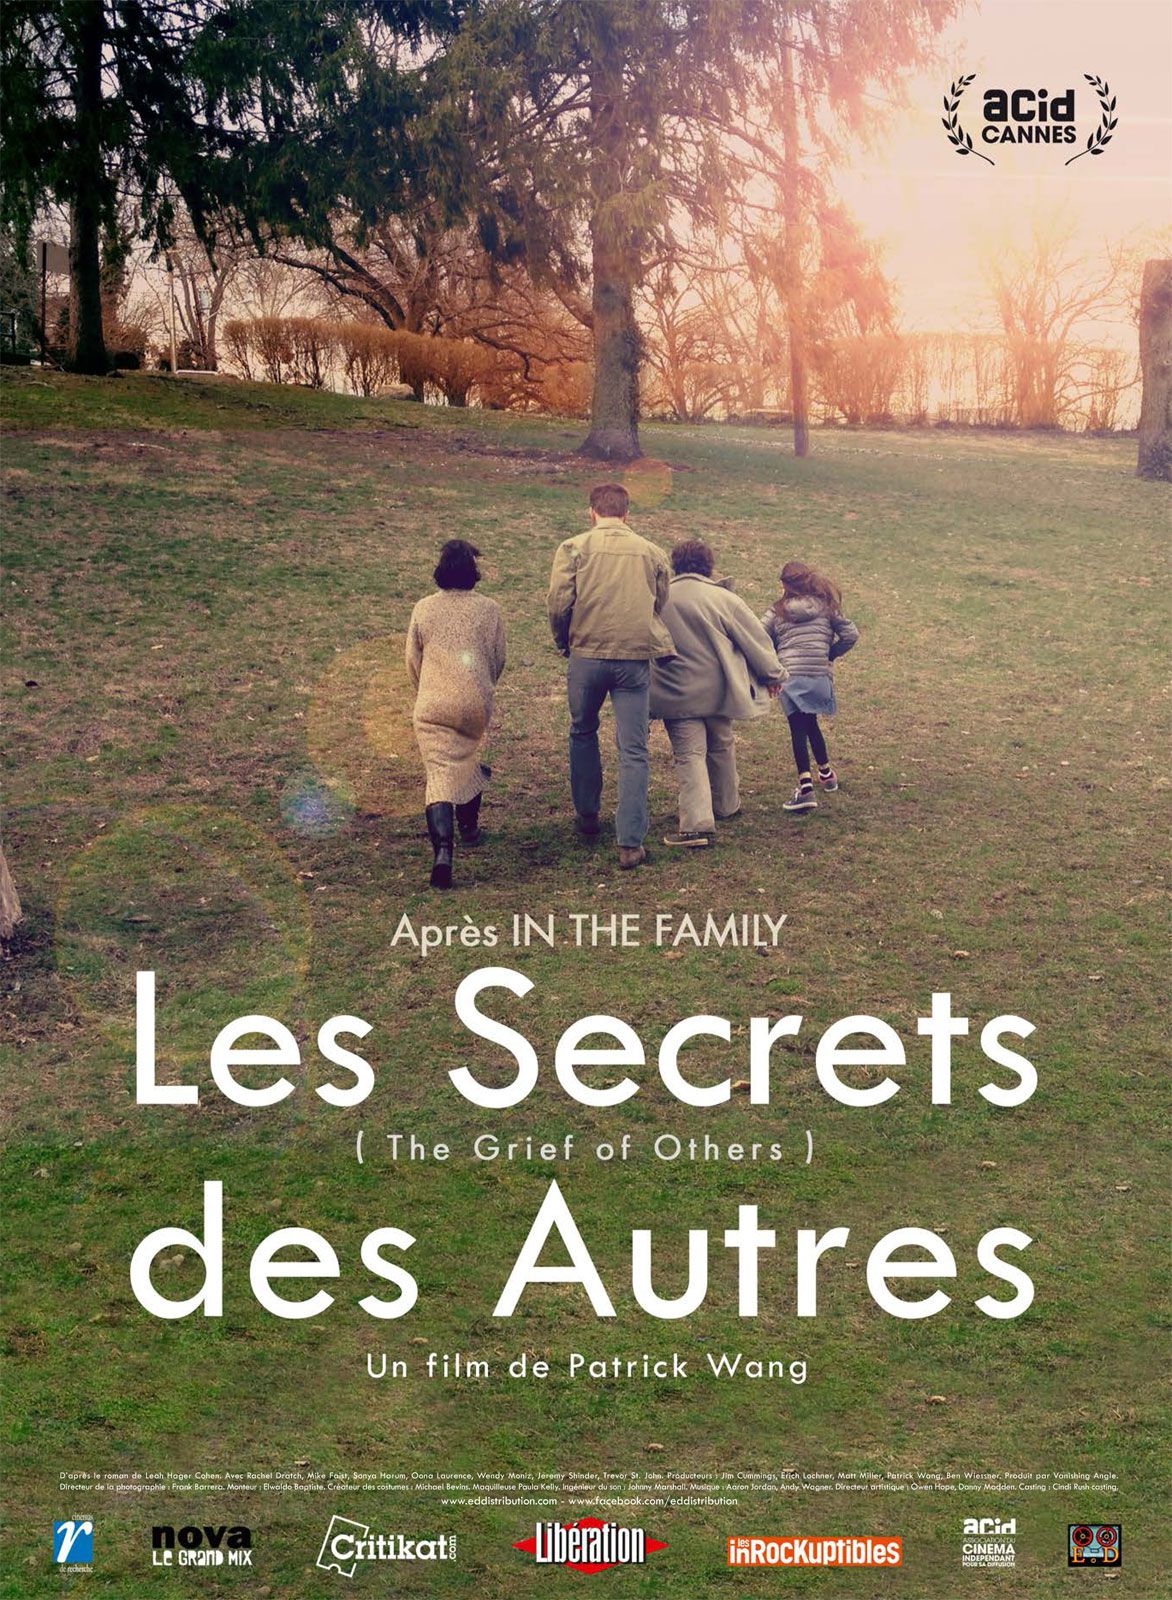 Les Secrets des autres - Film (2015) streaming VF gratuit complet